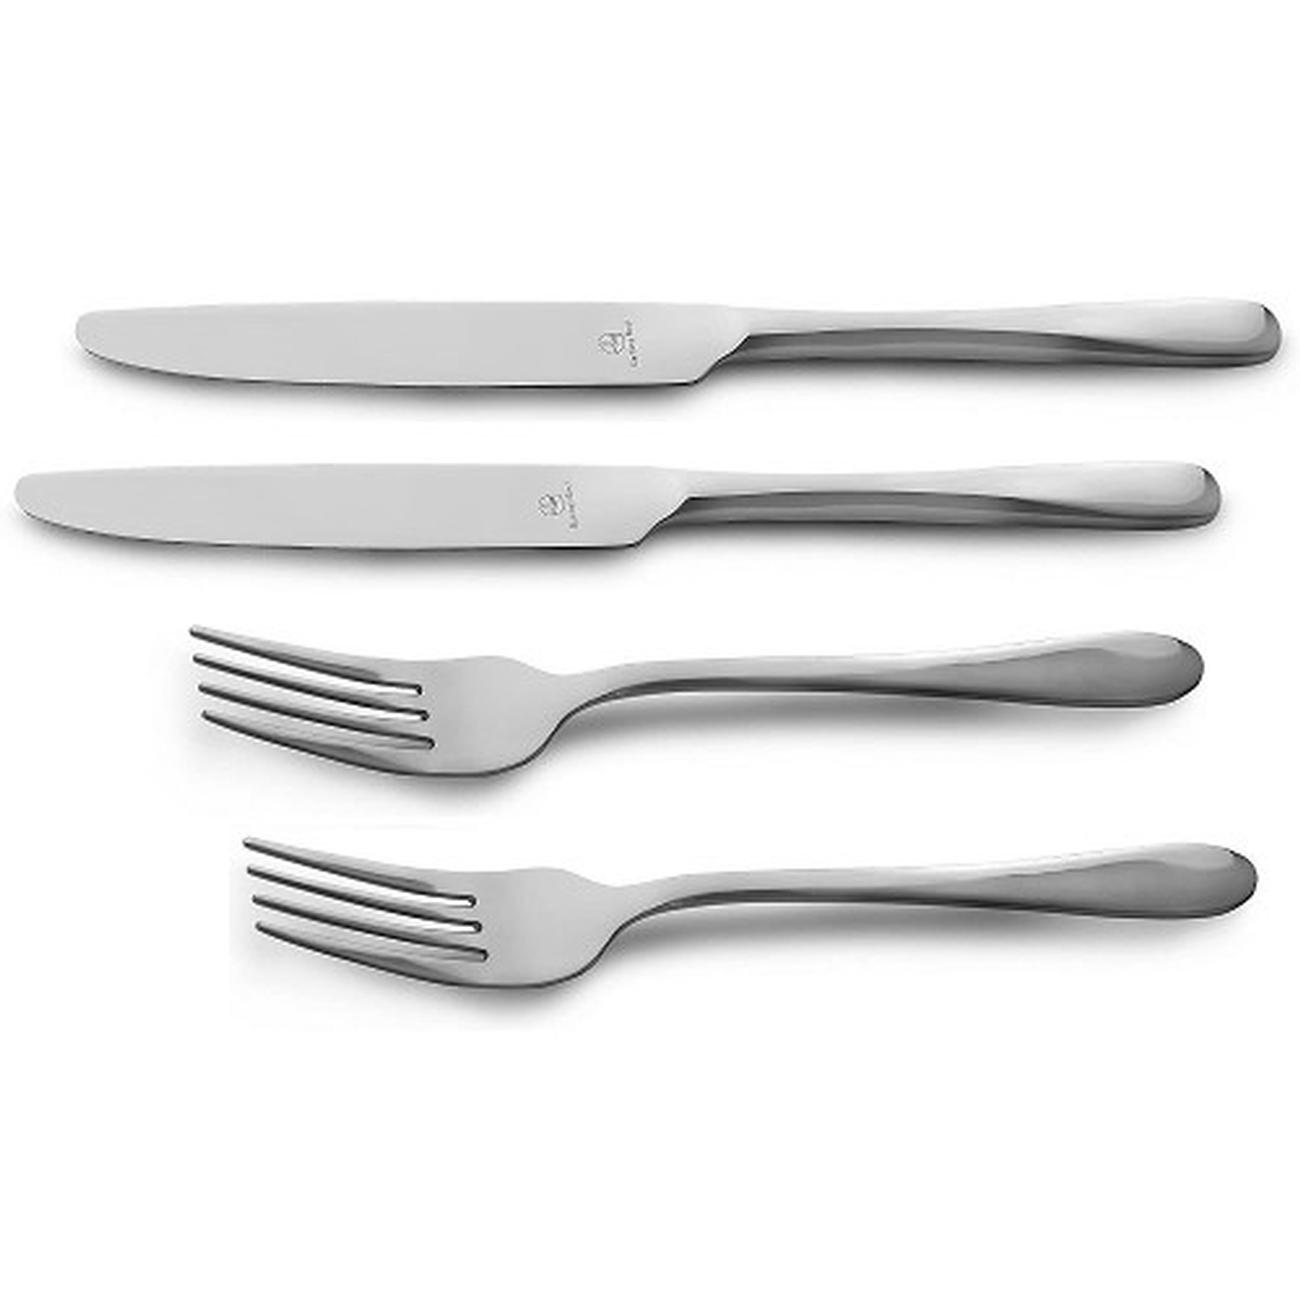 Grunwerg Windsor Stainless Steel Knives And Forks Pk 2 2TFTKWSR/C